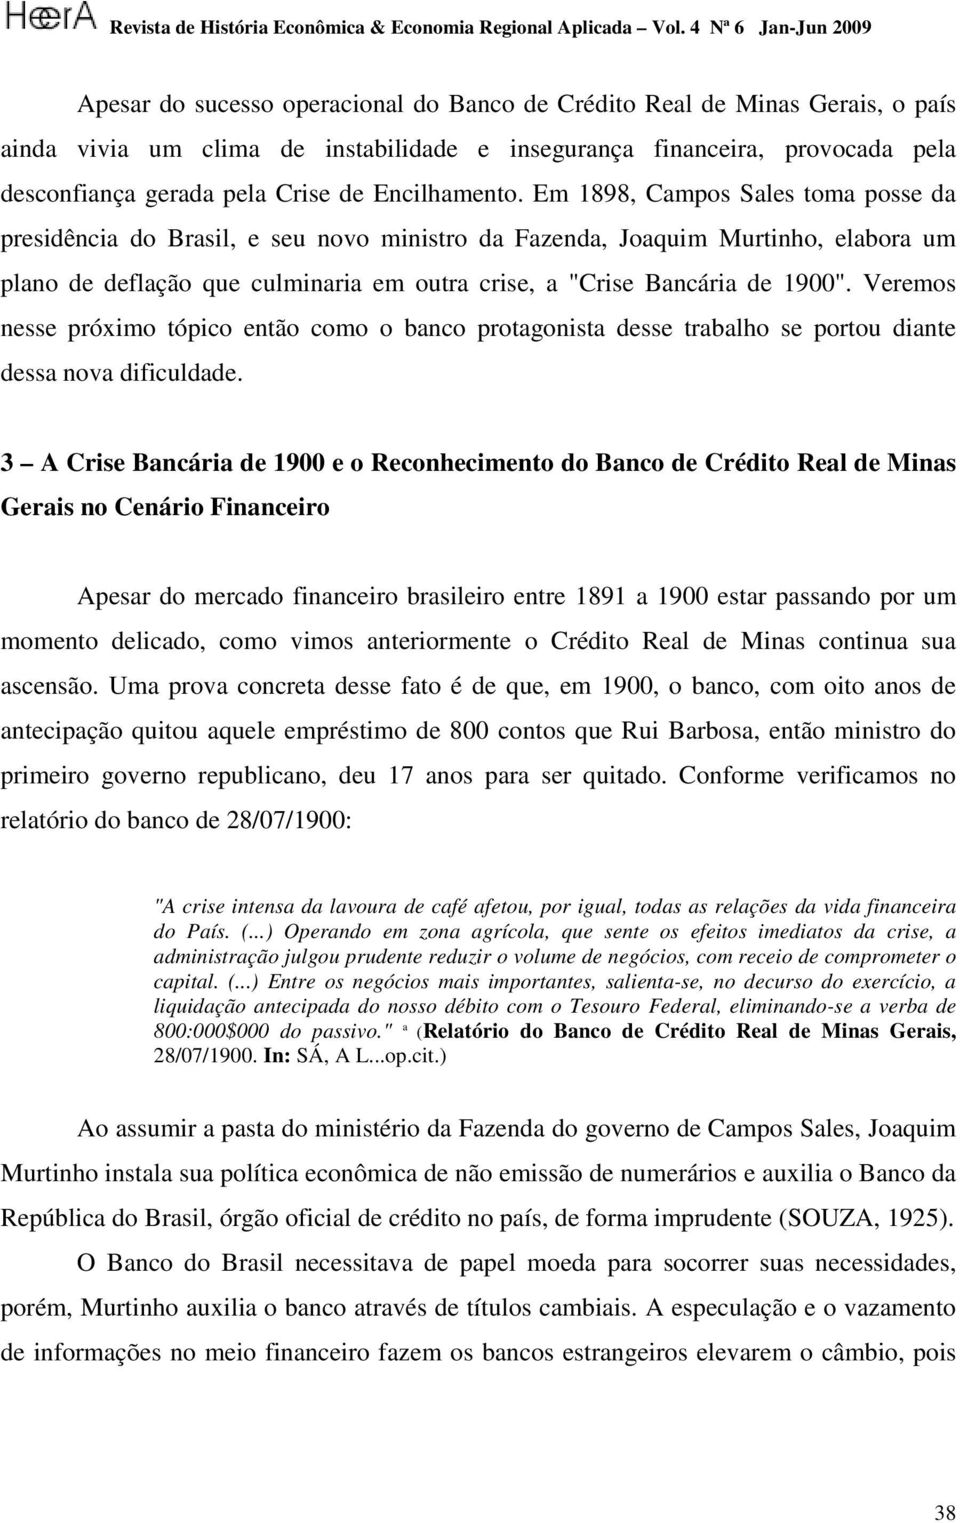 Em 1898, Campos Sales toma posse da presidência do Brasil, e seu novo ministro da Fazenda, Joaquim Murtinho, elabora um plano de deflação que culminaria em outra crise, a "Crise Bancária de 1900".